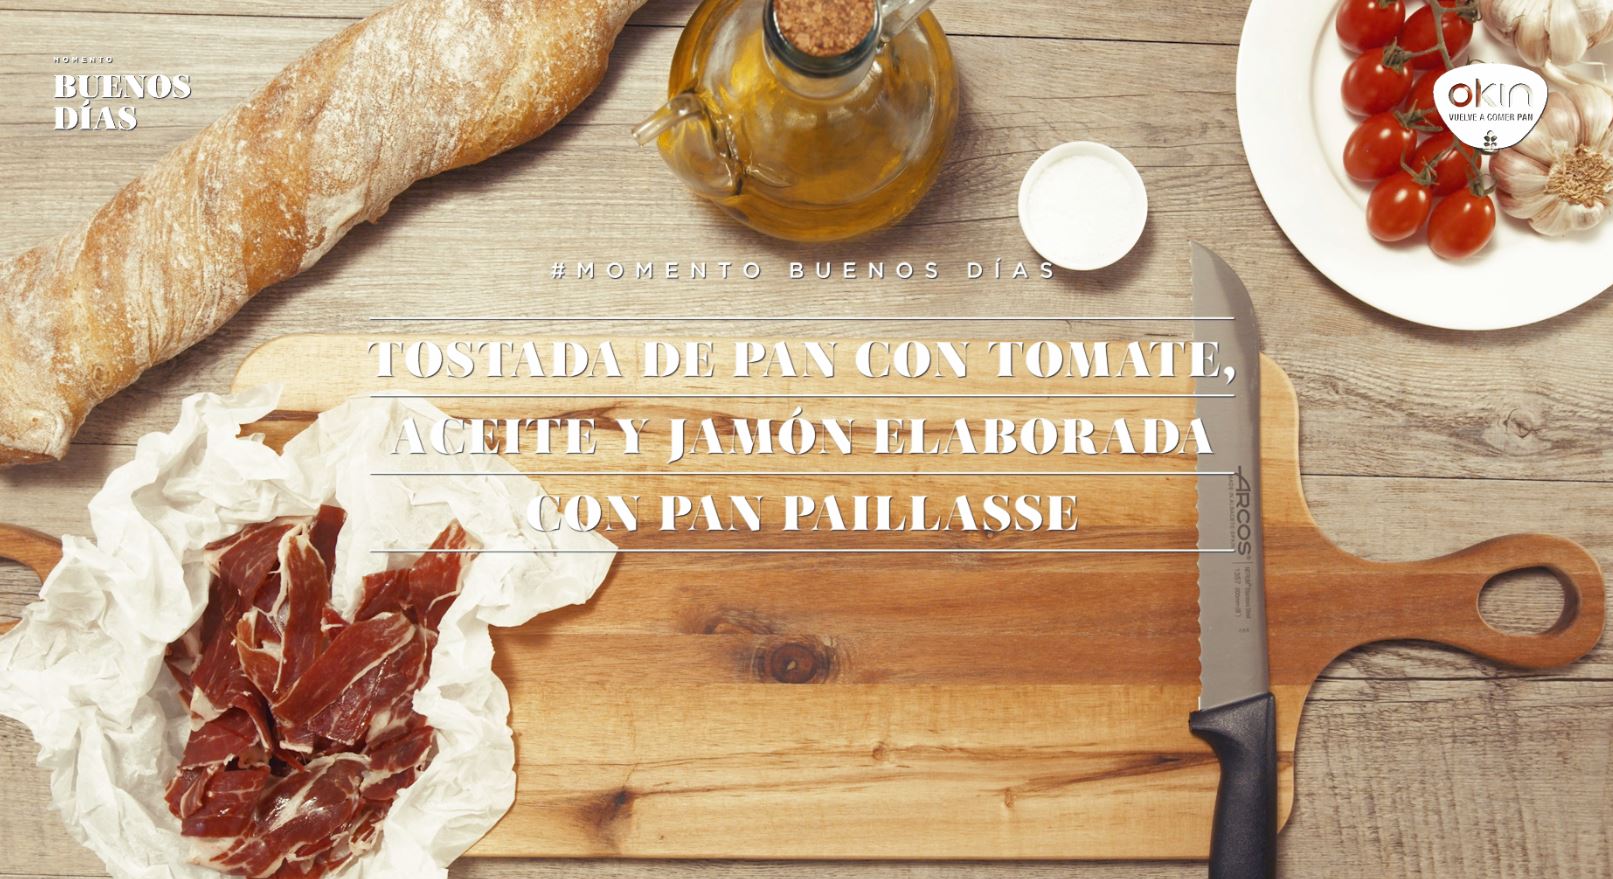 Tostada de pan con tomate, aceite y jamón elaborada con pan Paillasse